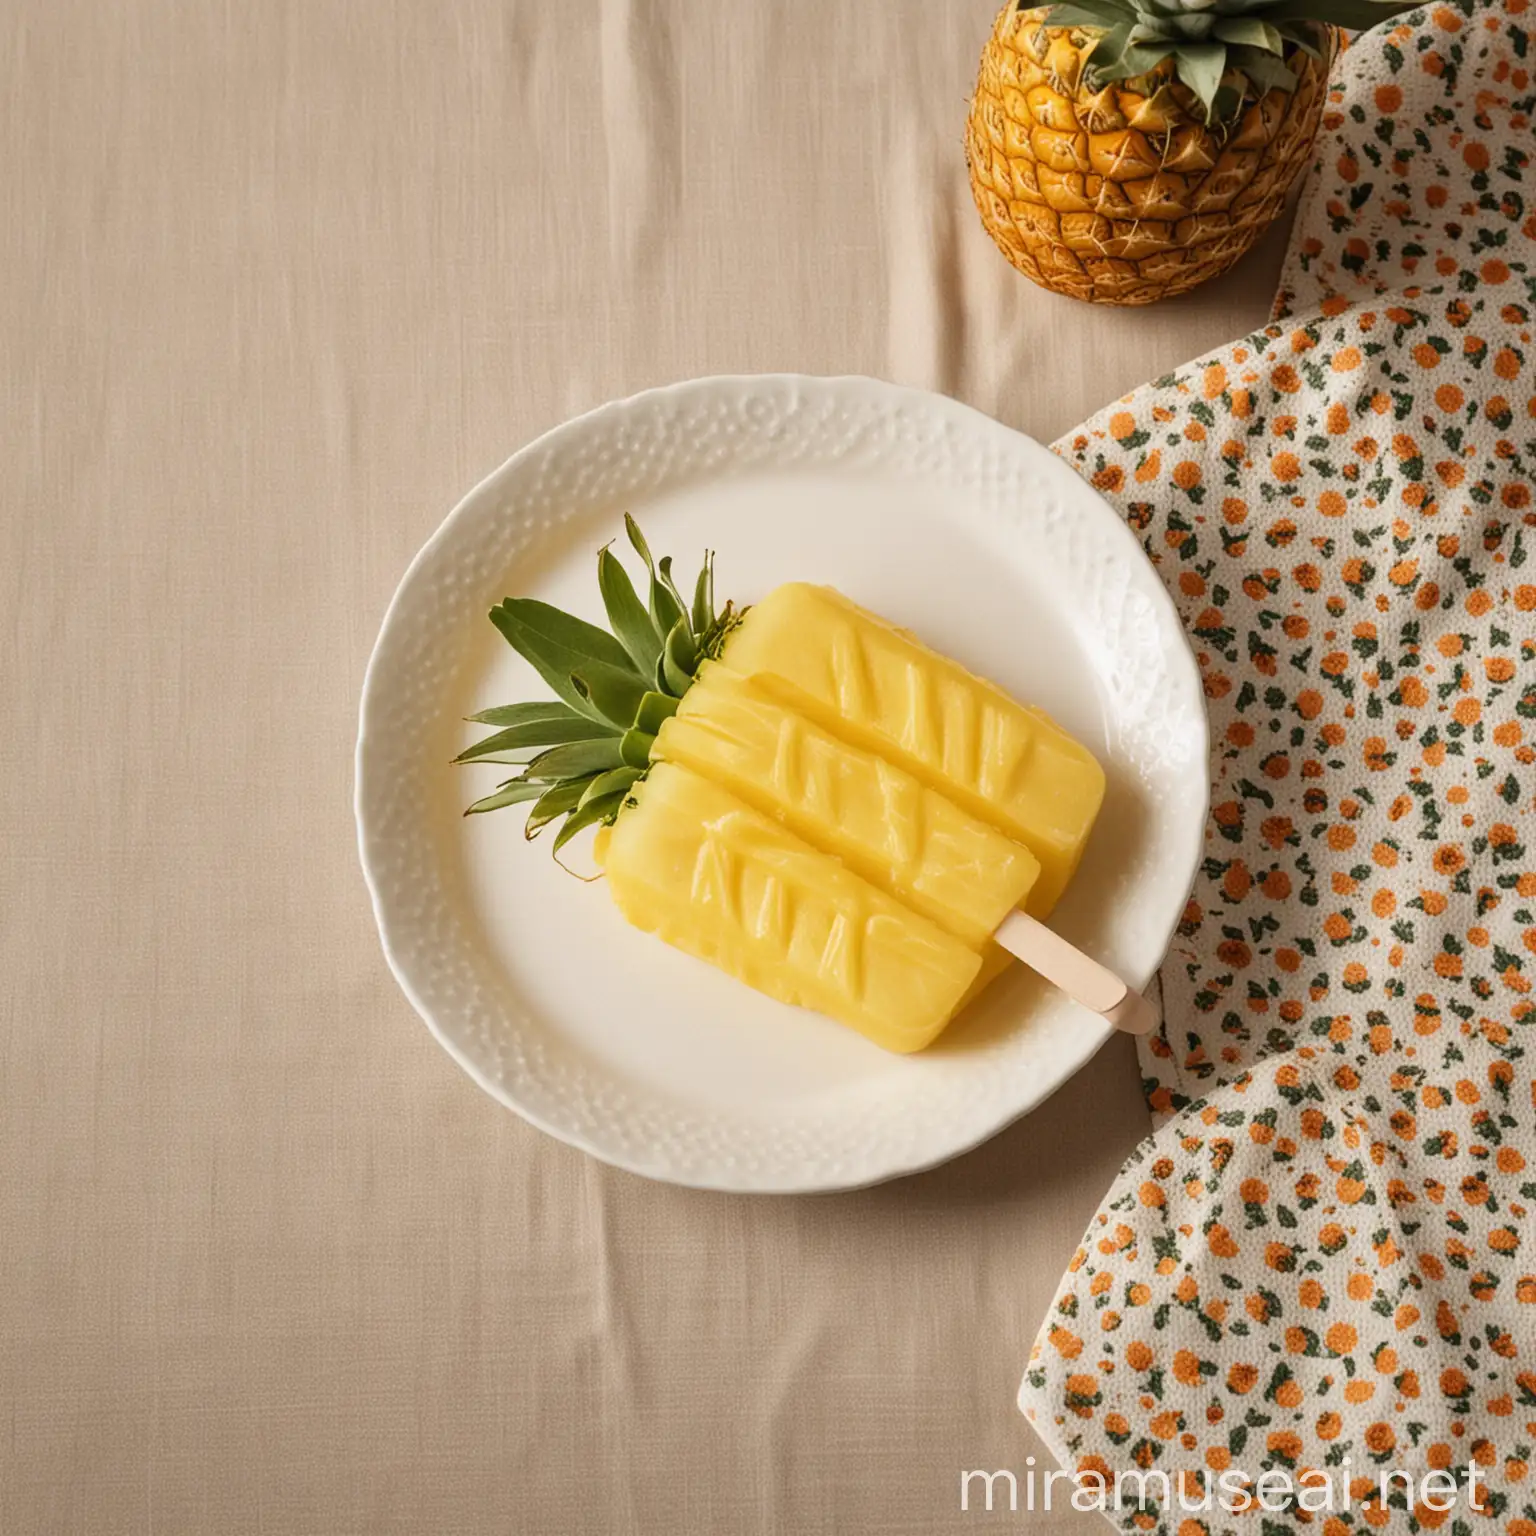 Refreshing Pineapple Popsicle on Elegant Table Setting